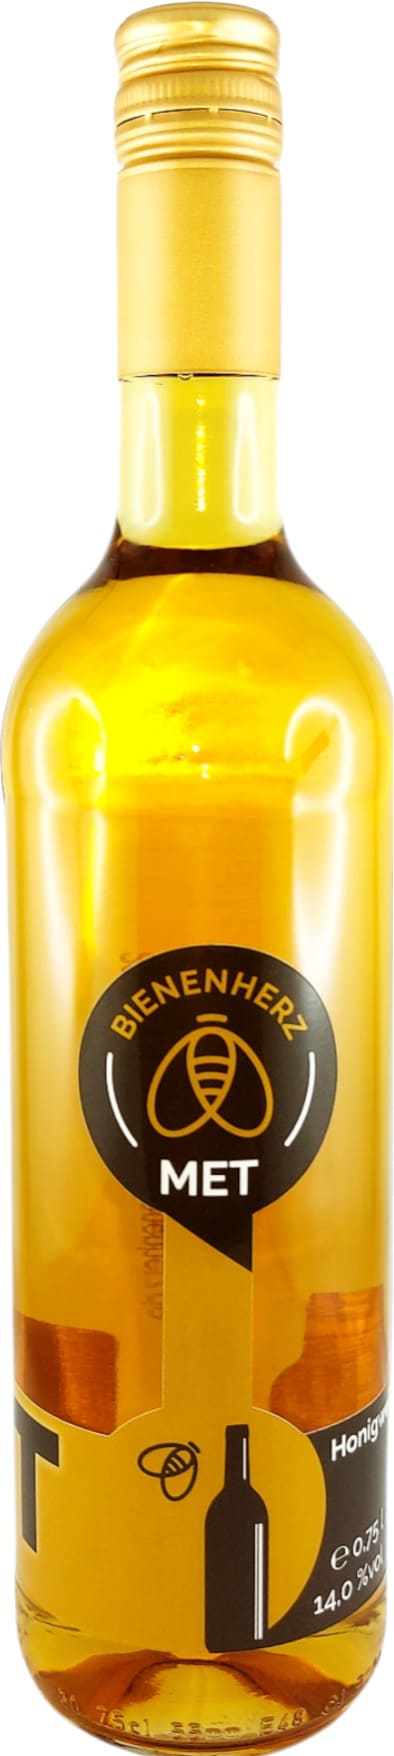 MET - Honigwein  | halbtrocken  | 750 ml | 14 vol% | aus hochwertigem Honig aus Thüringen | ohne Zusätze | Qualität aus Deutschland